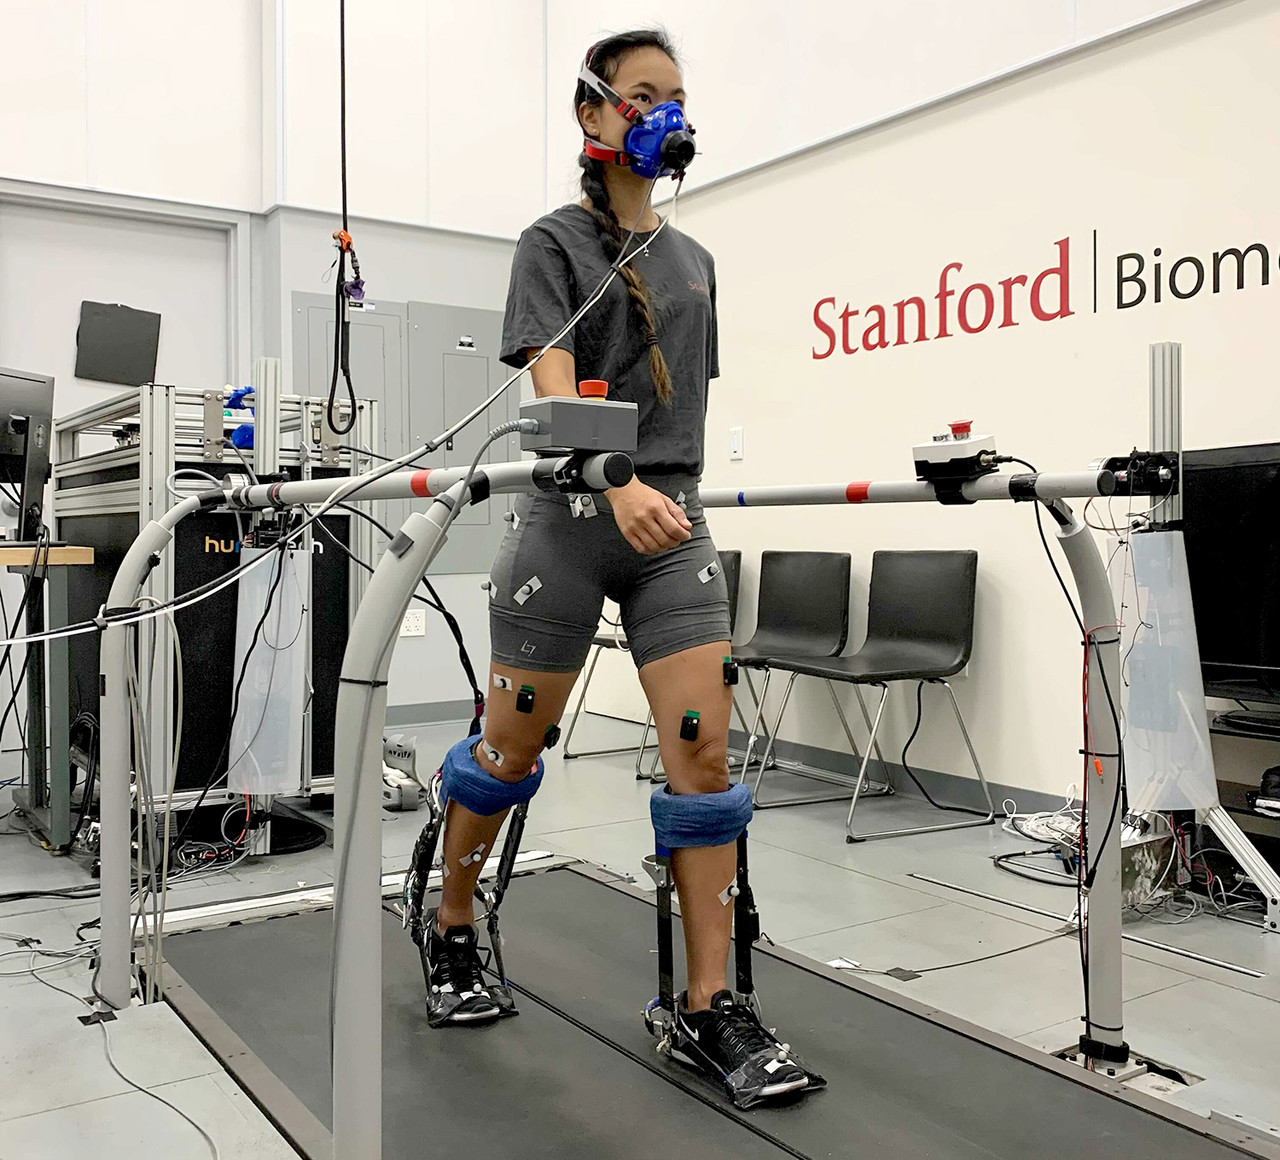 스탠퍼드 바이오메카트로닉스 연구소의 발목 외골격 에뮬레이터에서 걷고 있는 모습(사진:스탠퍼드)